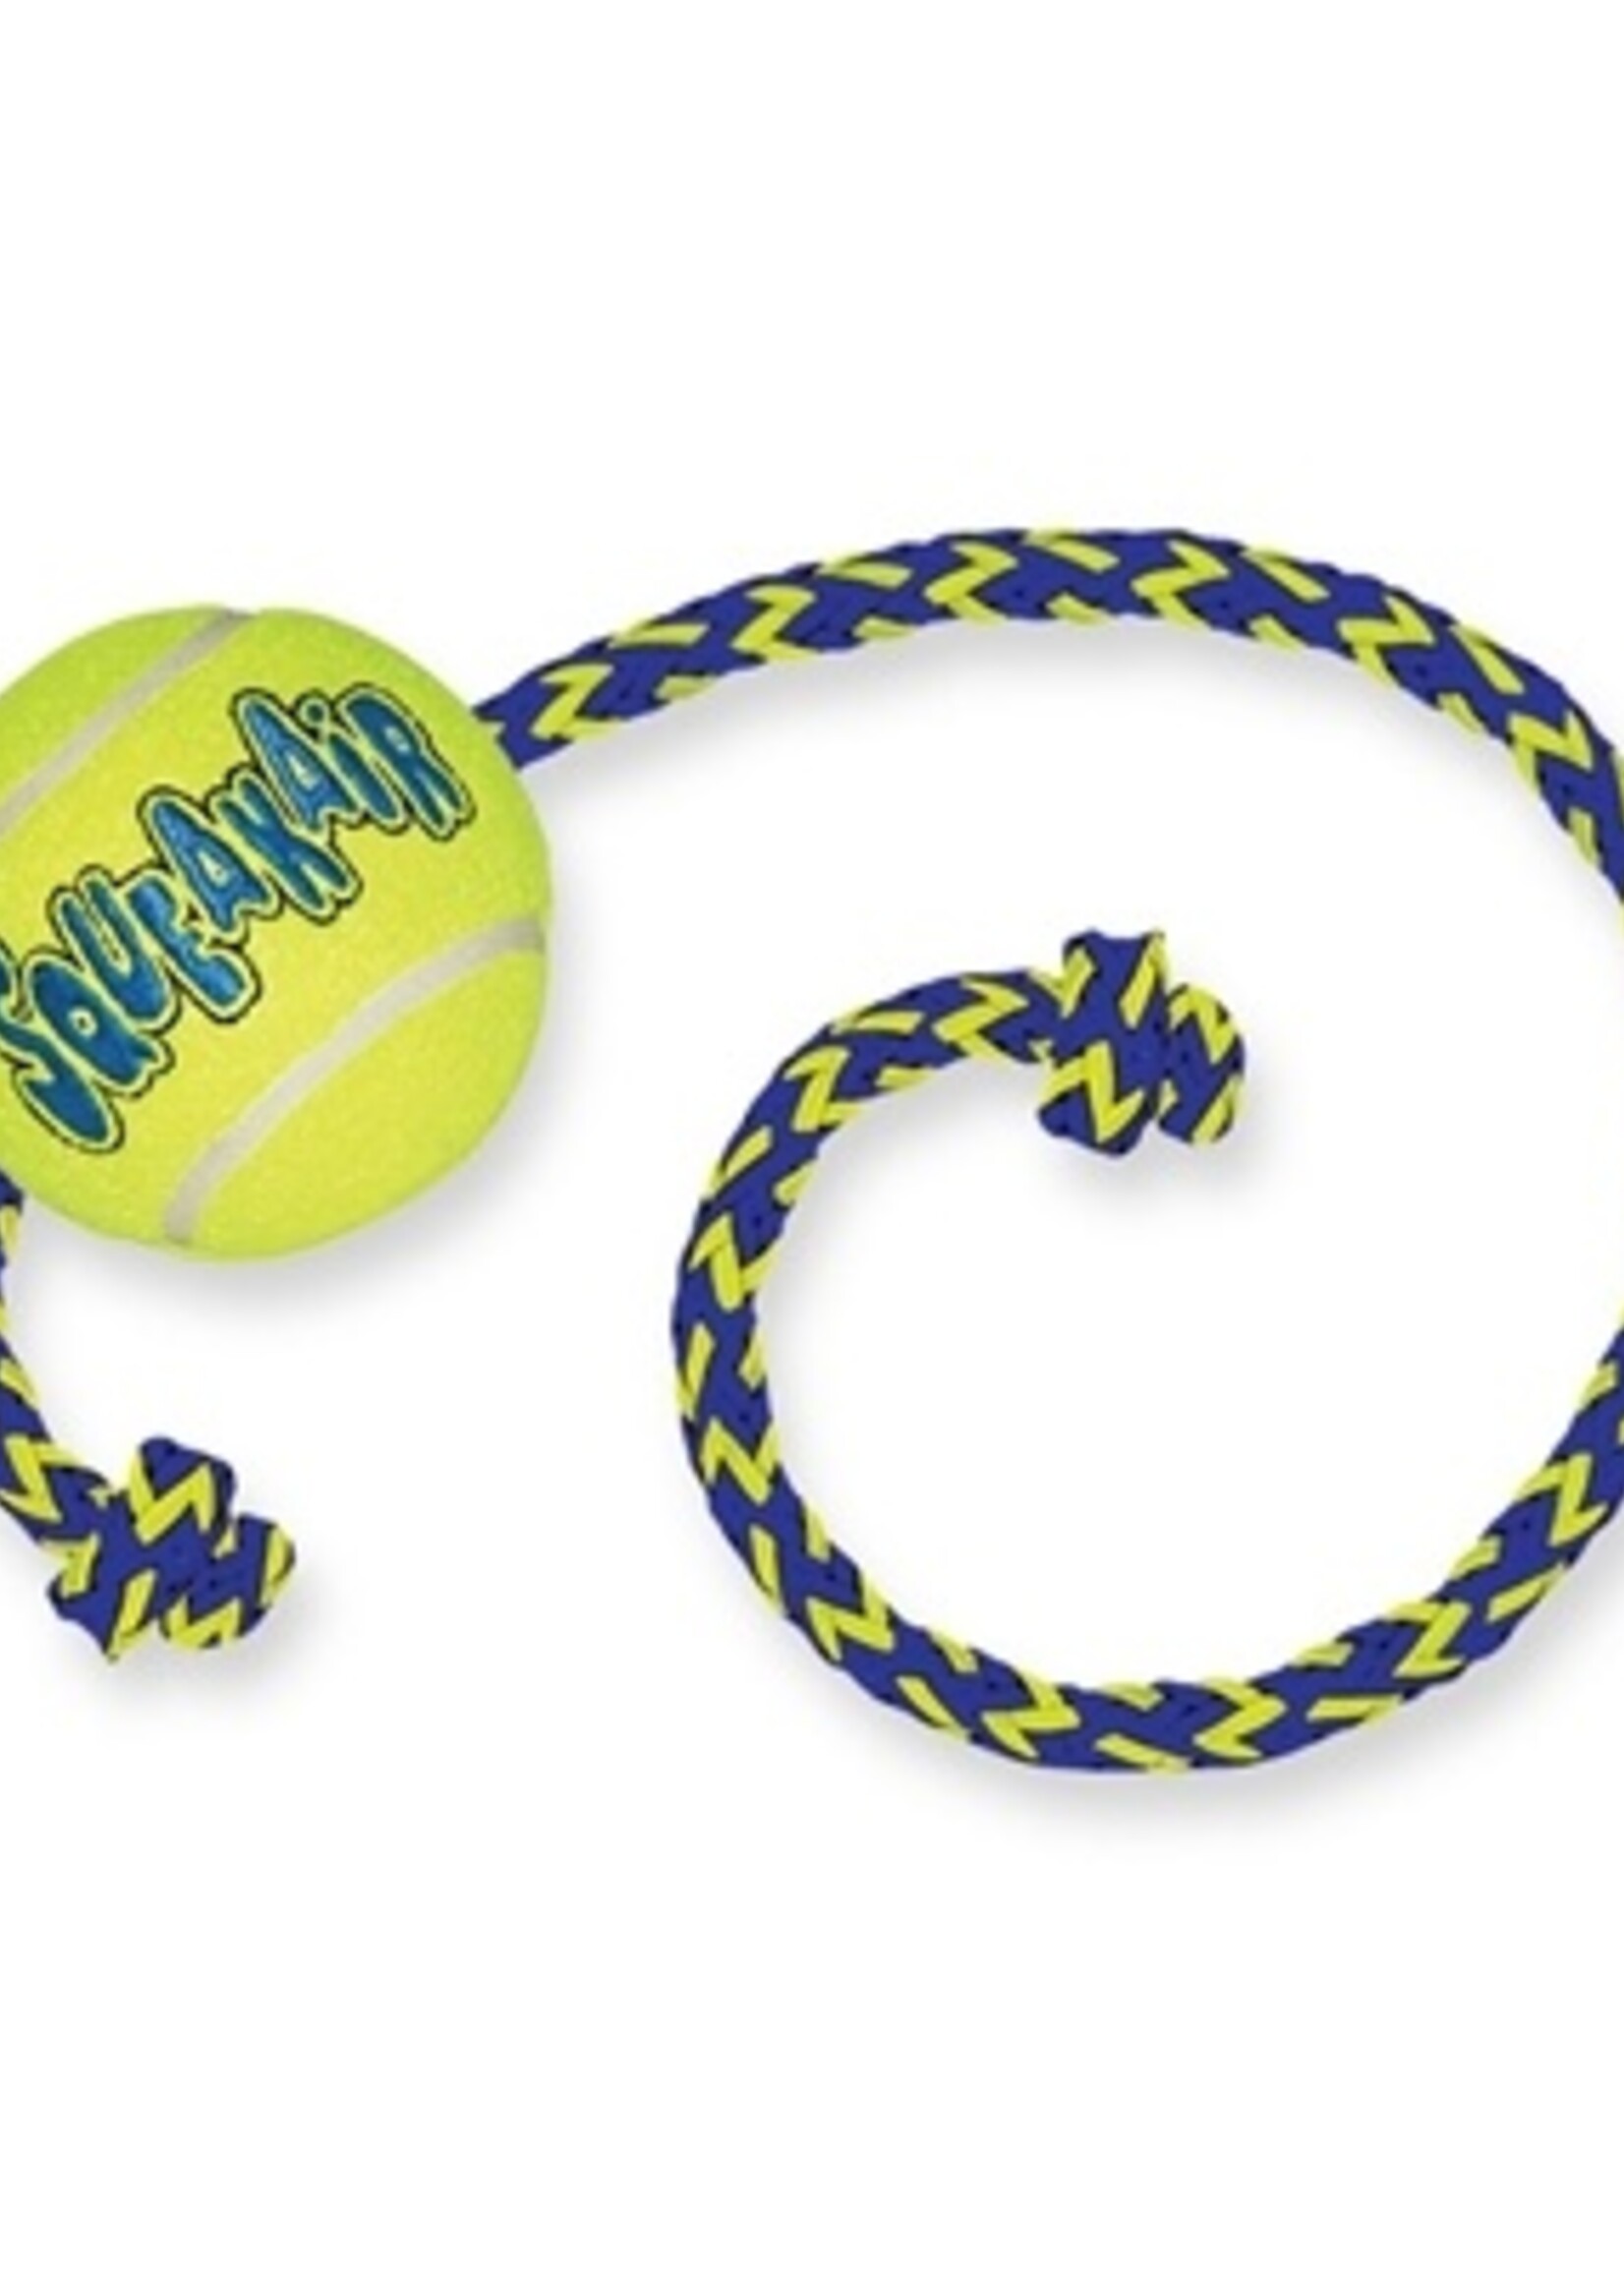 Kong Kong squeakair bal met touw geel / blauw